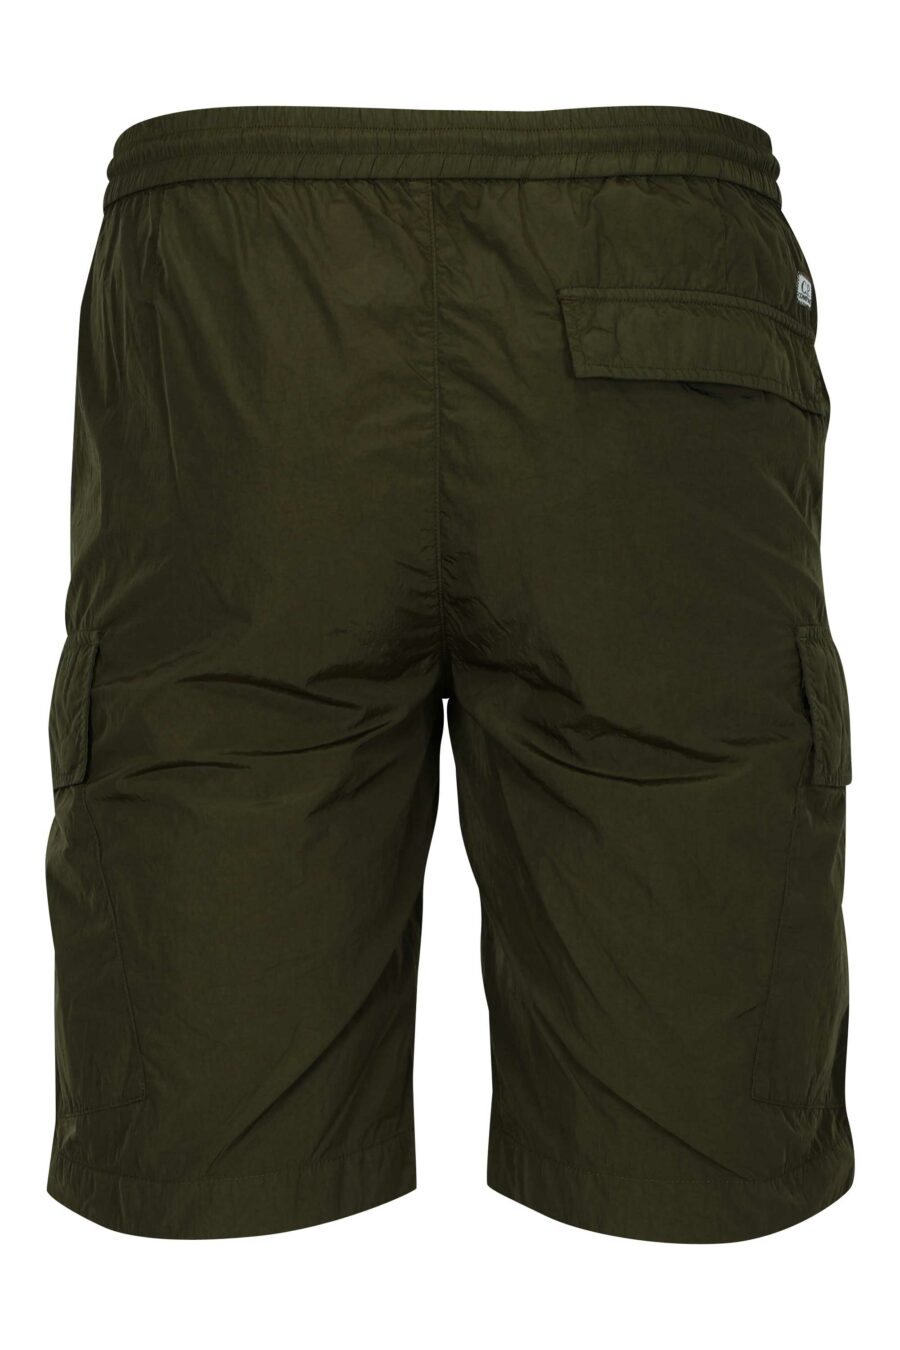 Pantalón corto verde militar con minilogo lente - 7620943785333 1